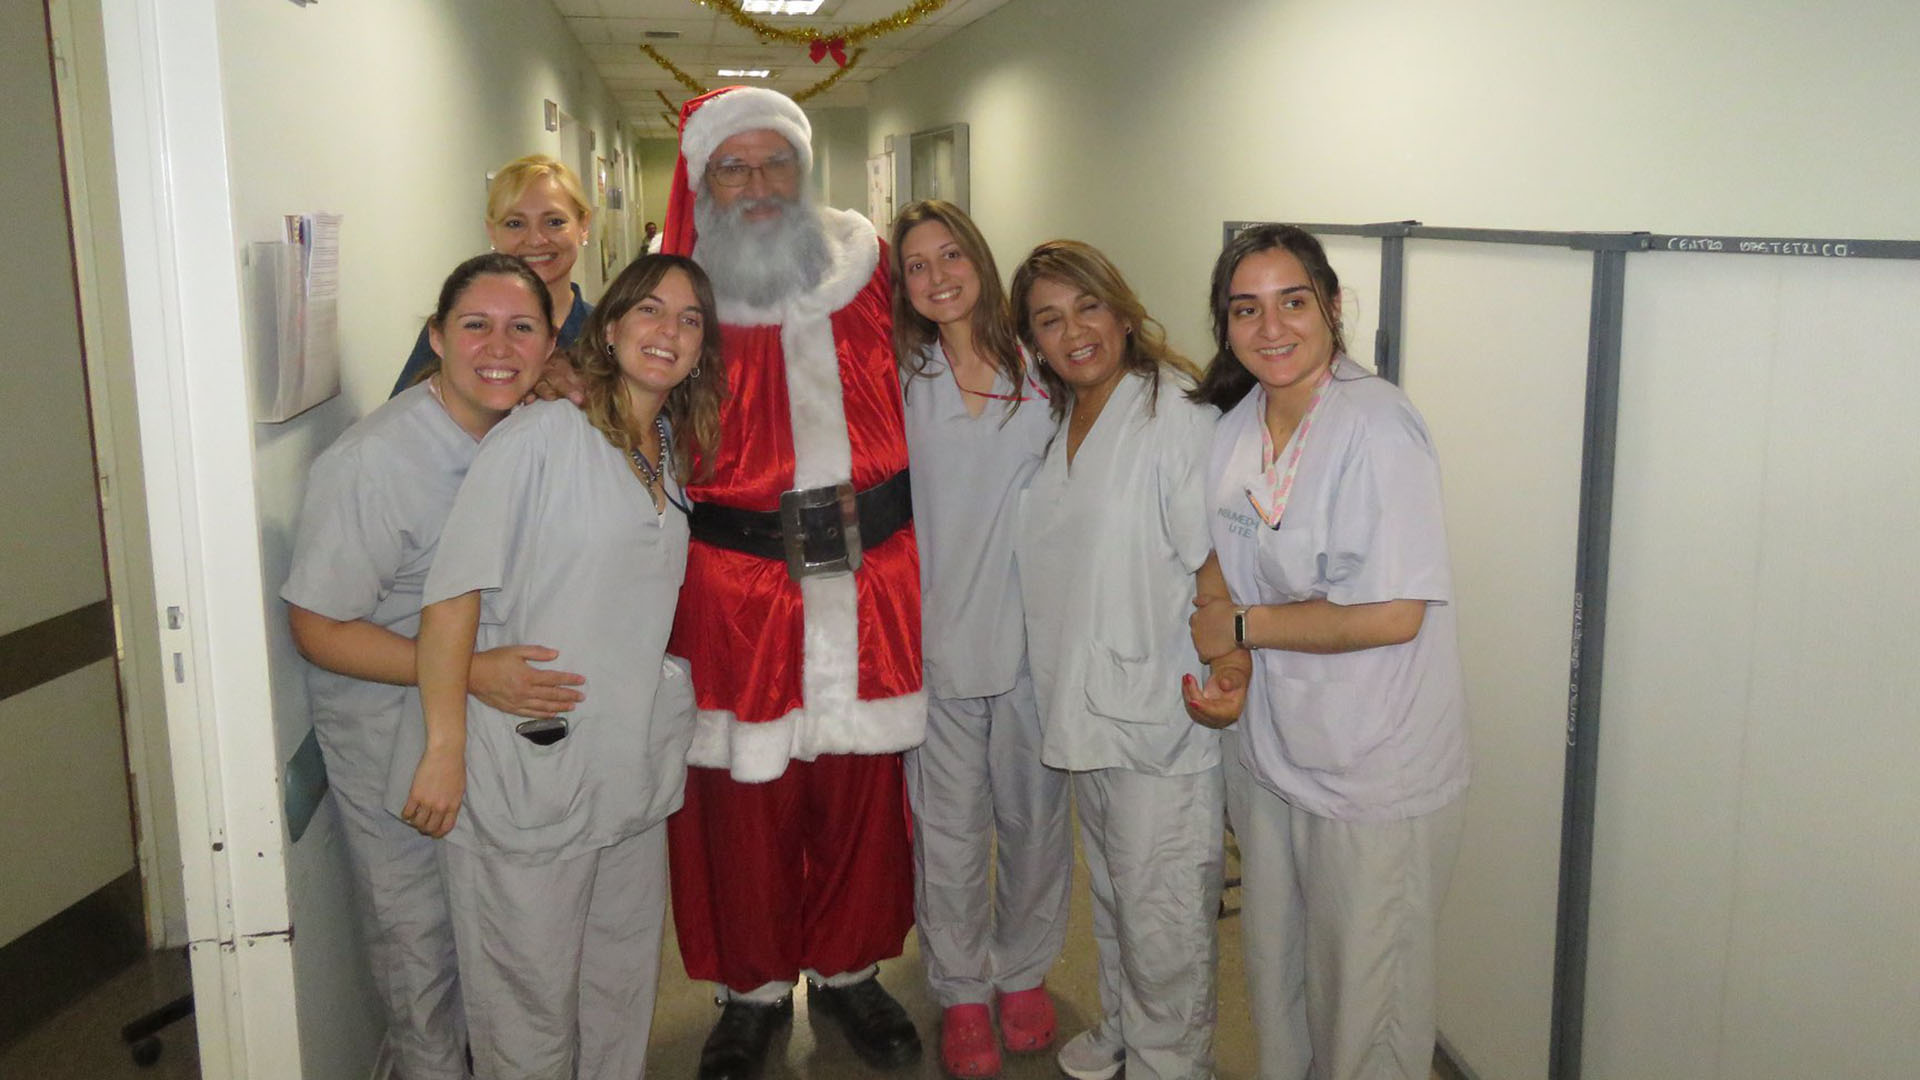 El equipo médico de los hospitales espera ansioso la llegada de Papá Noel (Facebook: Papá Noel San Juan)